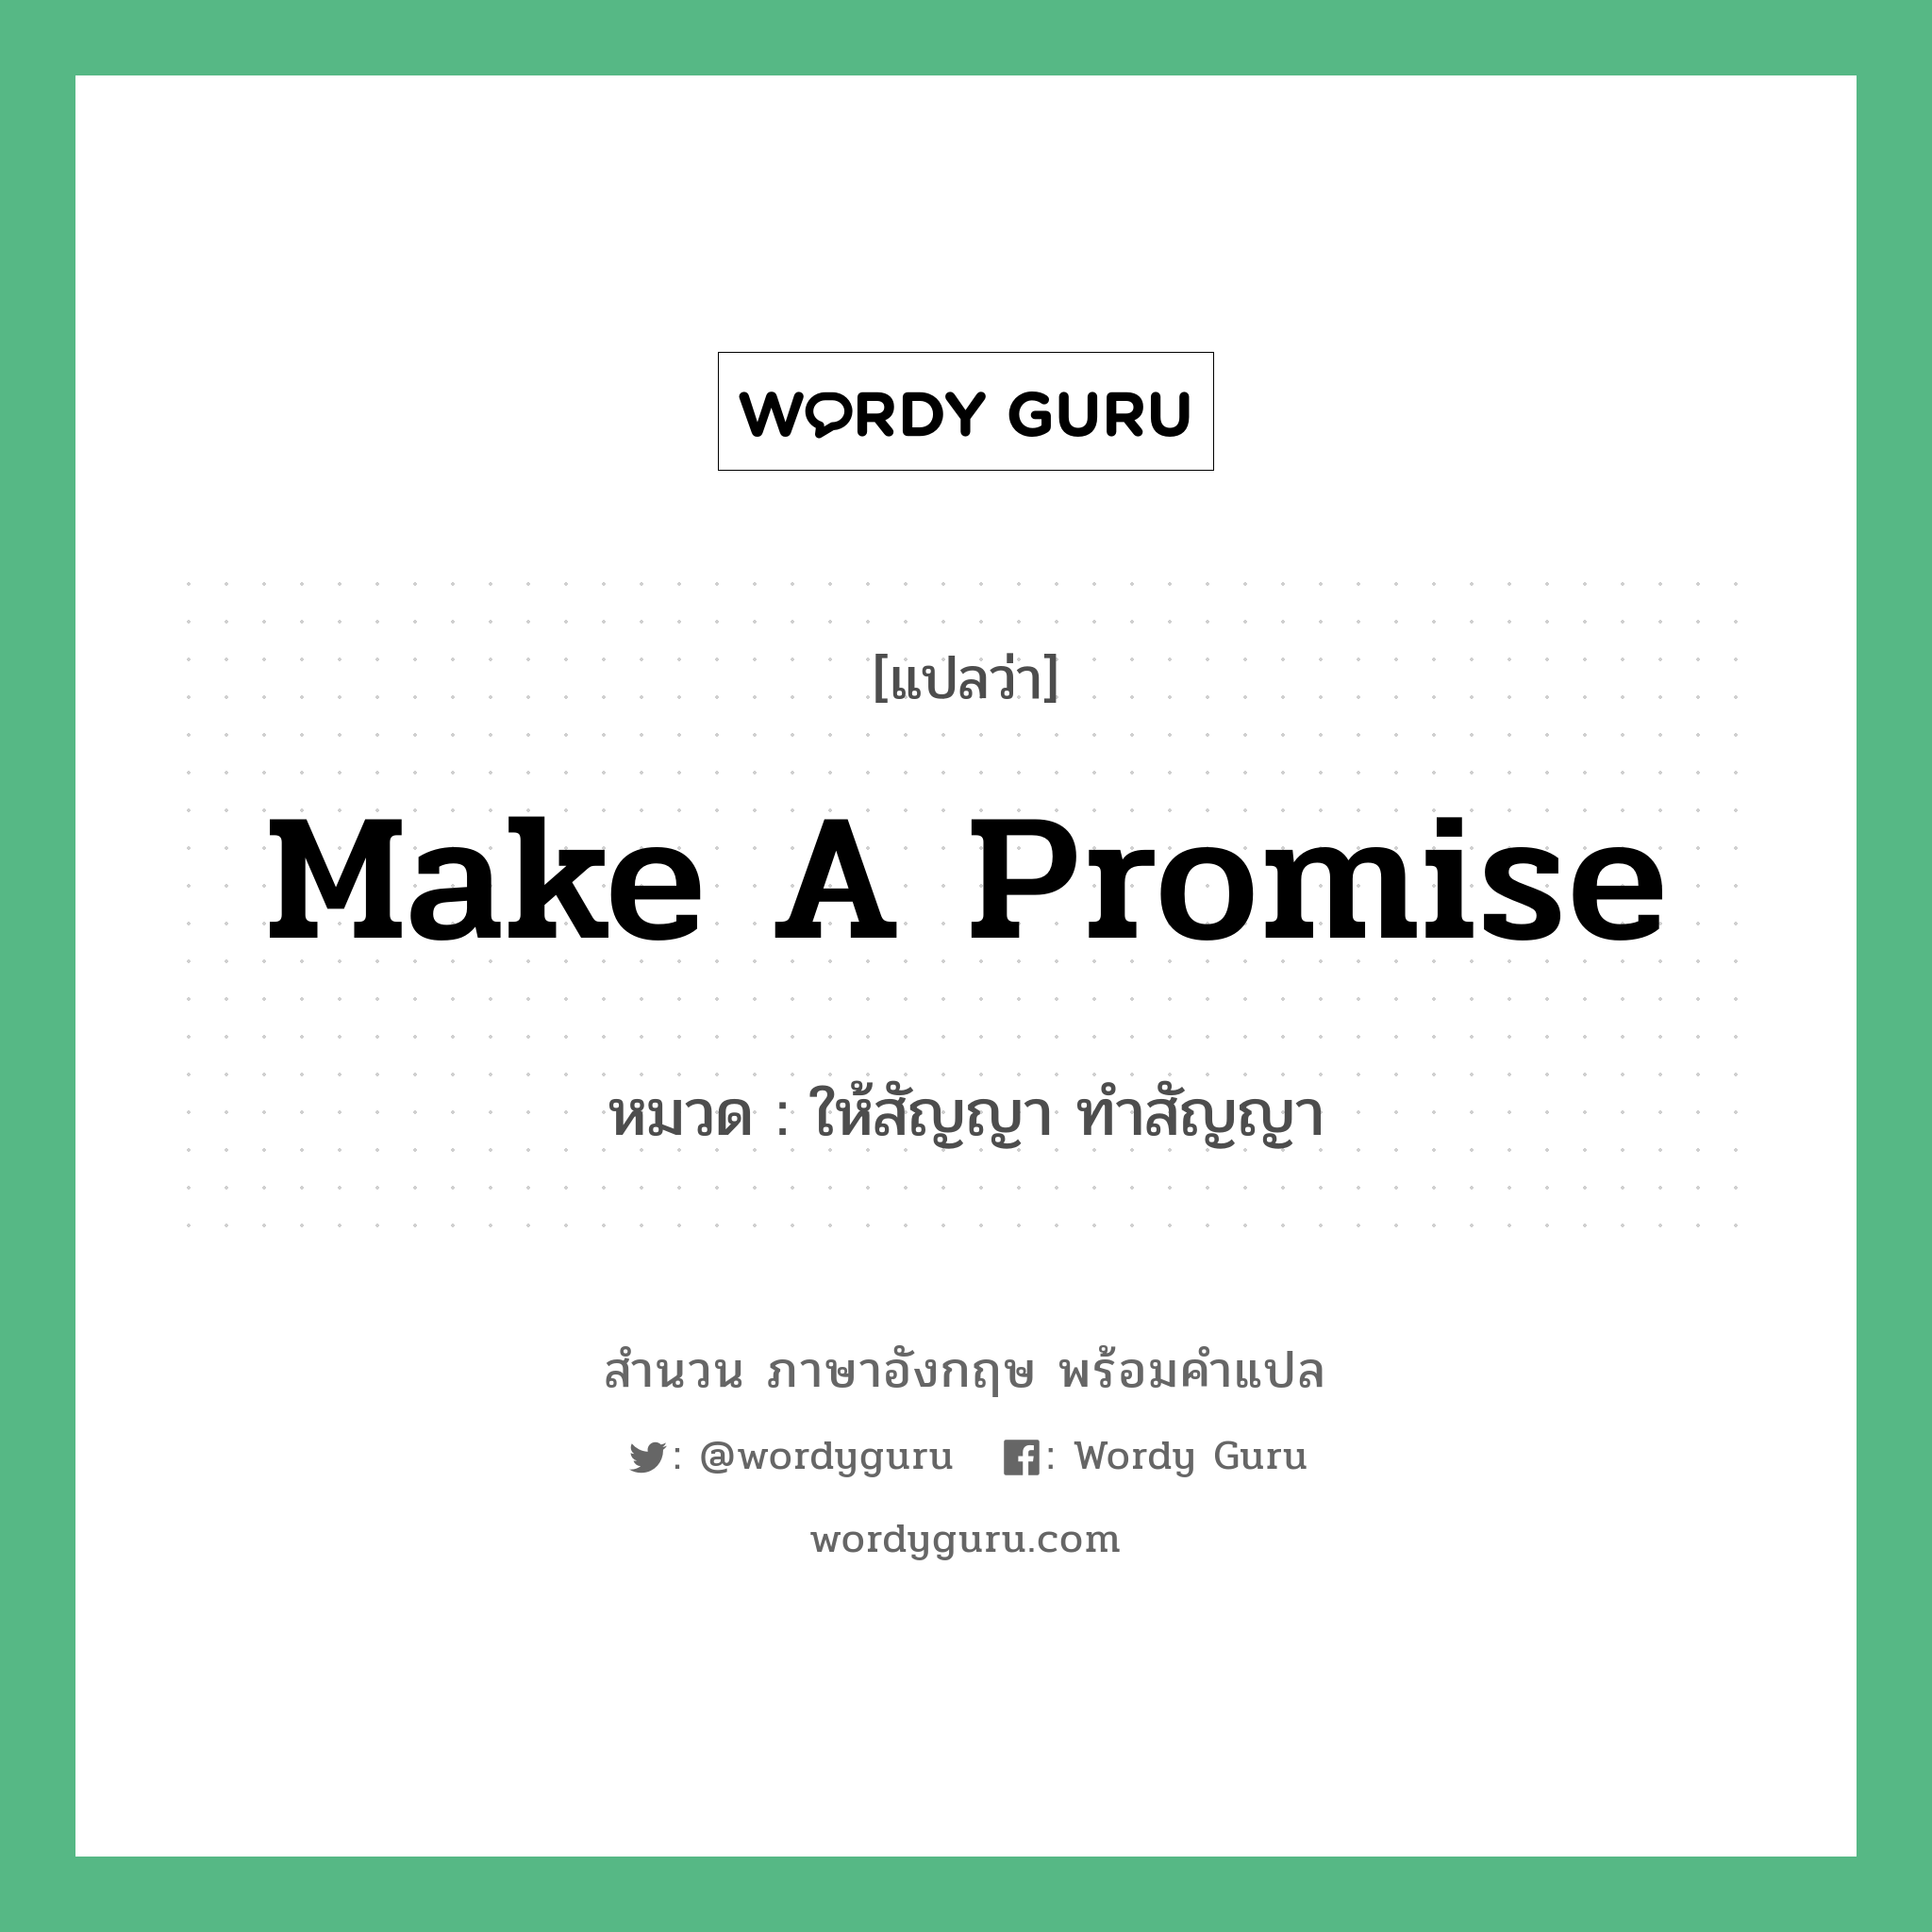 ให้สัญญา ทำสัญญา ภาษาอังกฤษ?, สำนวนภาษาอังกฤษ ให้สัญญา ทำสัญญา แปลว่า ให้สัญญา ทำสัญญา หมวด Make a promise